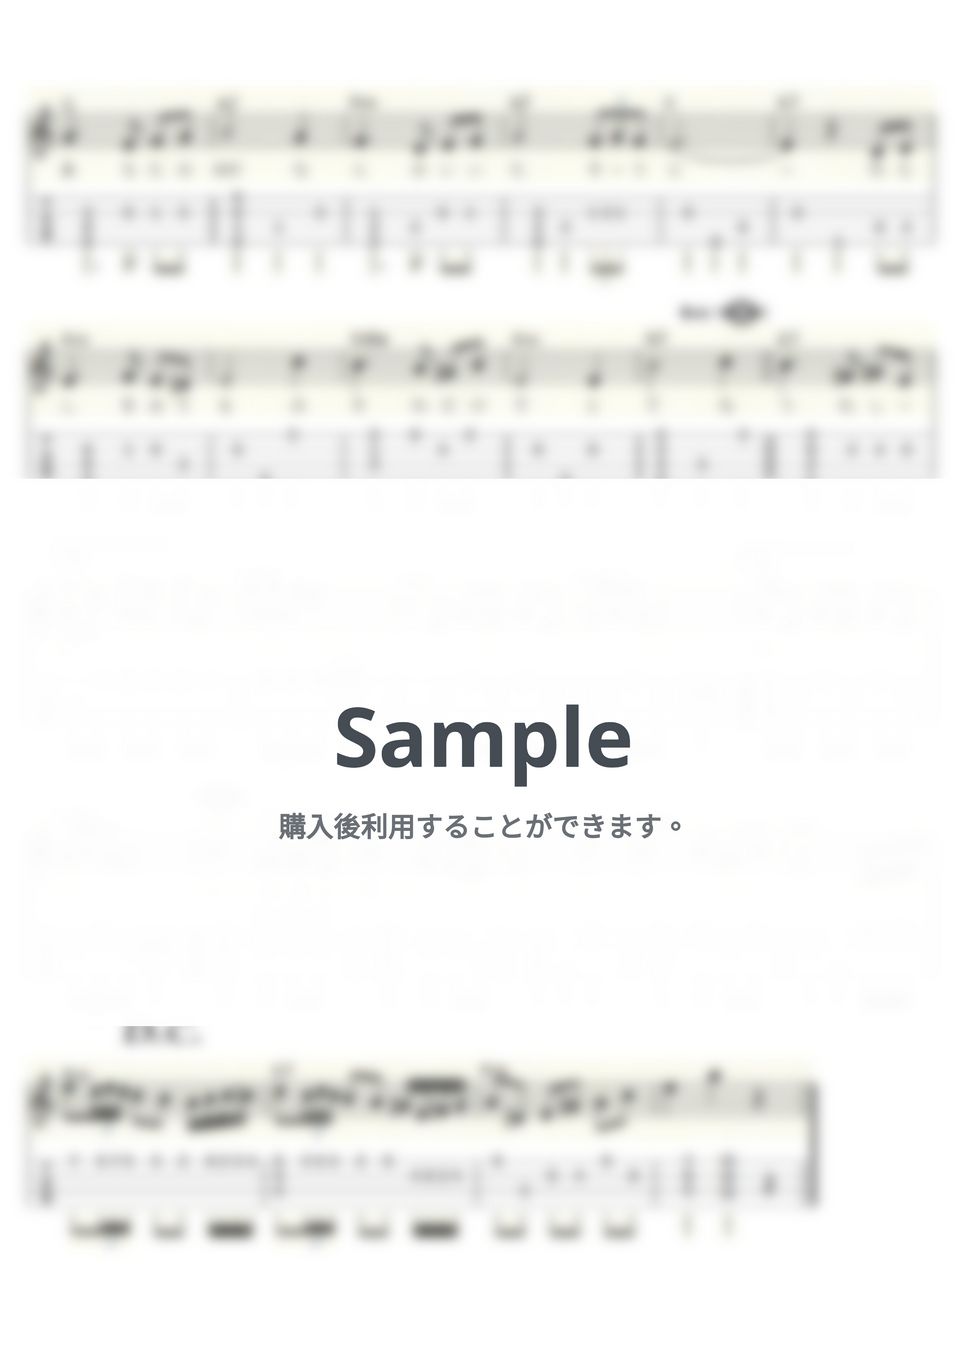 園 まり - 何もいわないで (ｳｸﾚﾚｿﾛ/Low-G/中級) by ukulelepapa